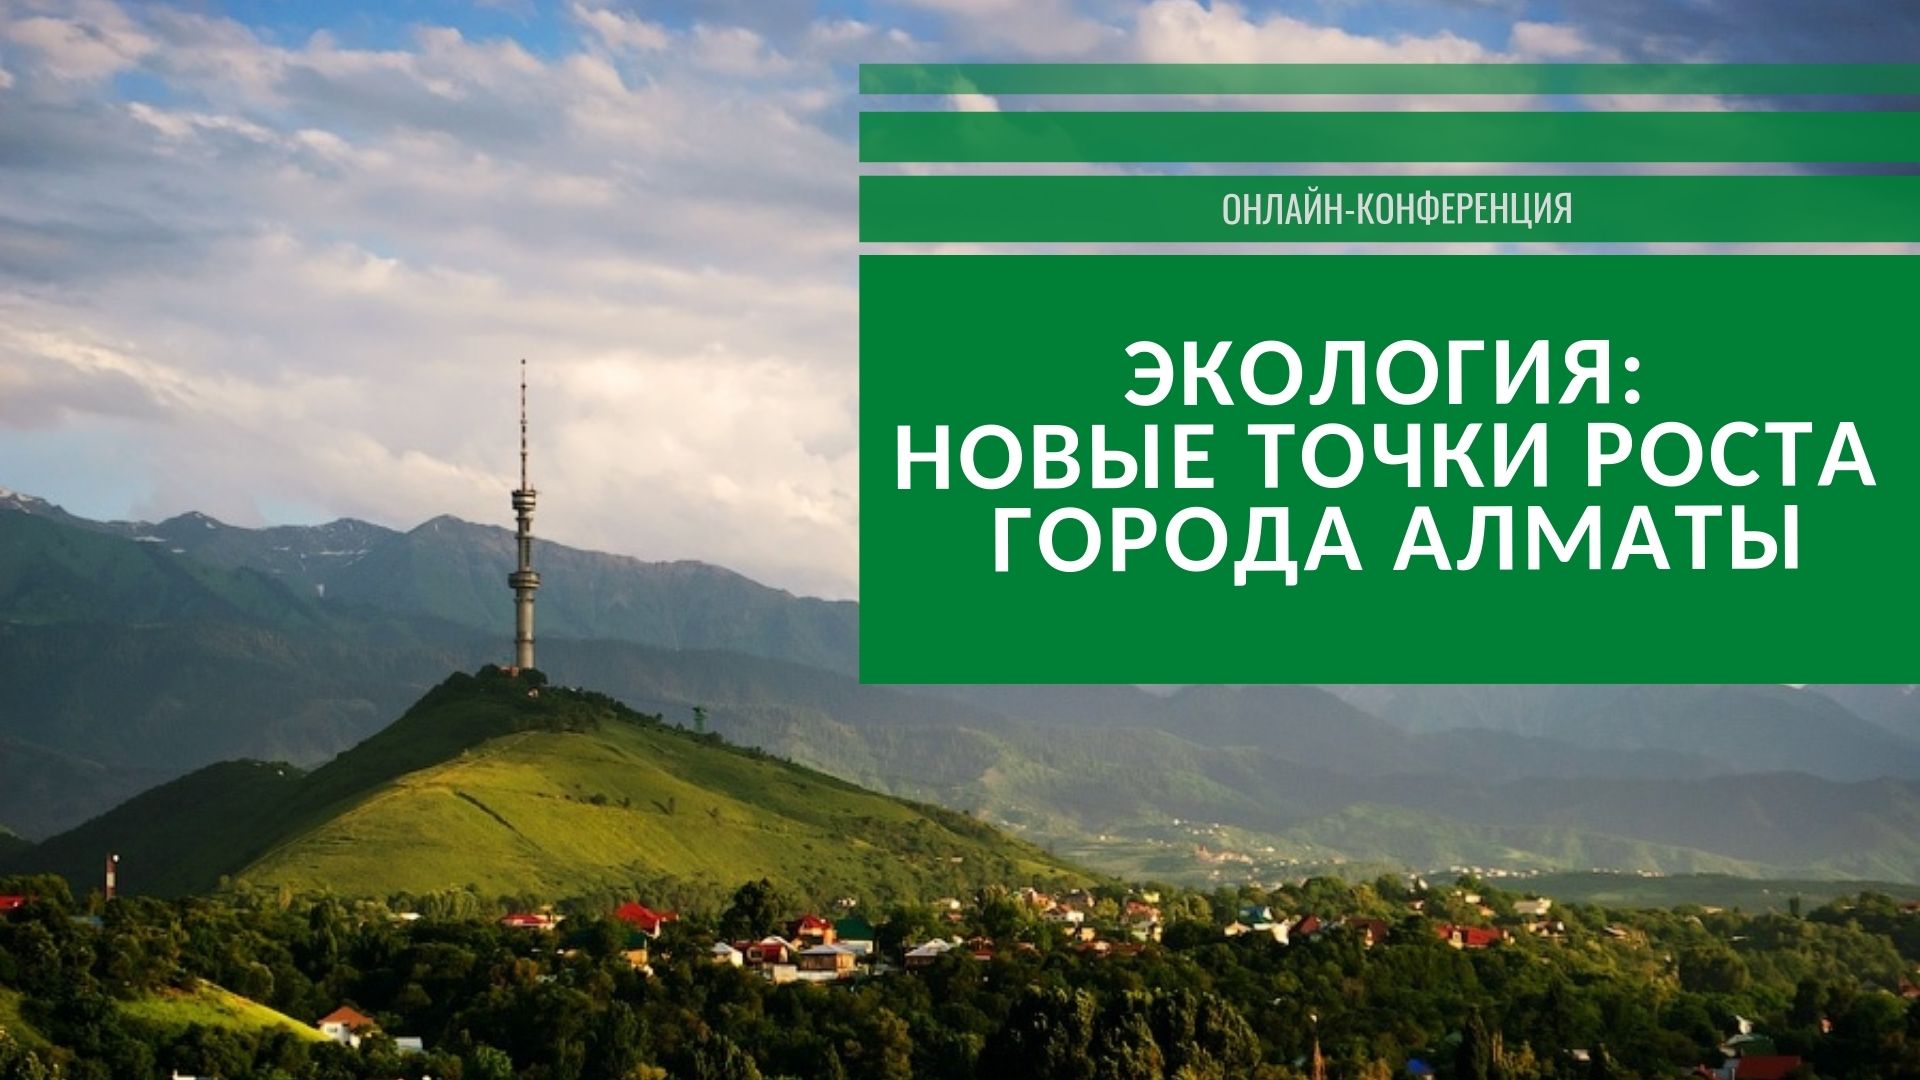 В южной столице пройдет онлайн-конференция "Новые точки роста города Алматы"